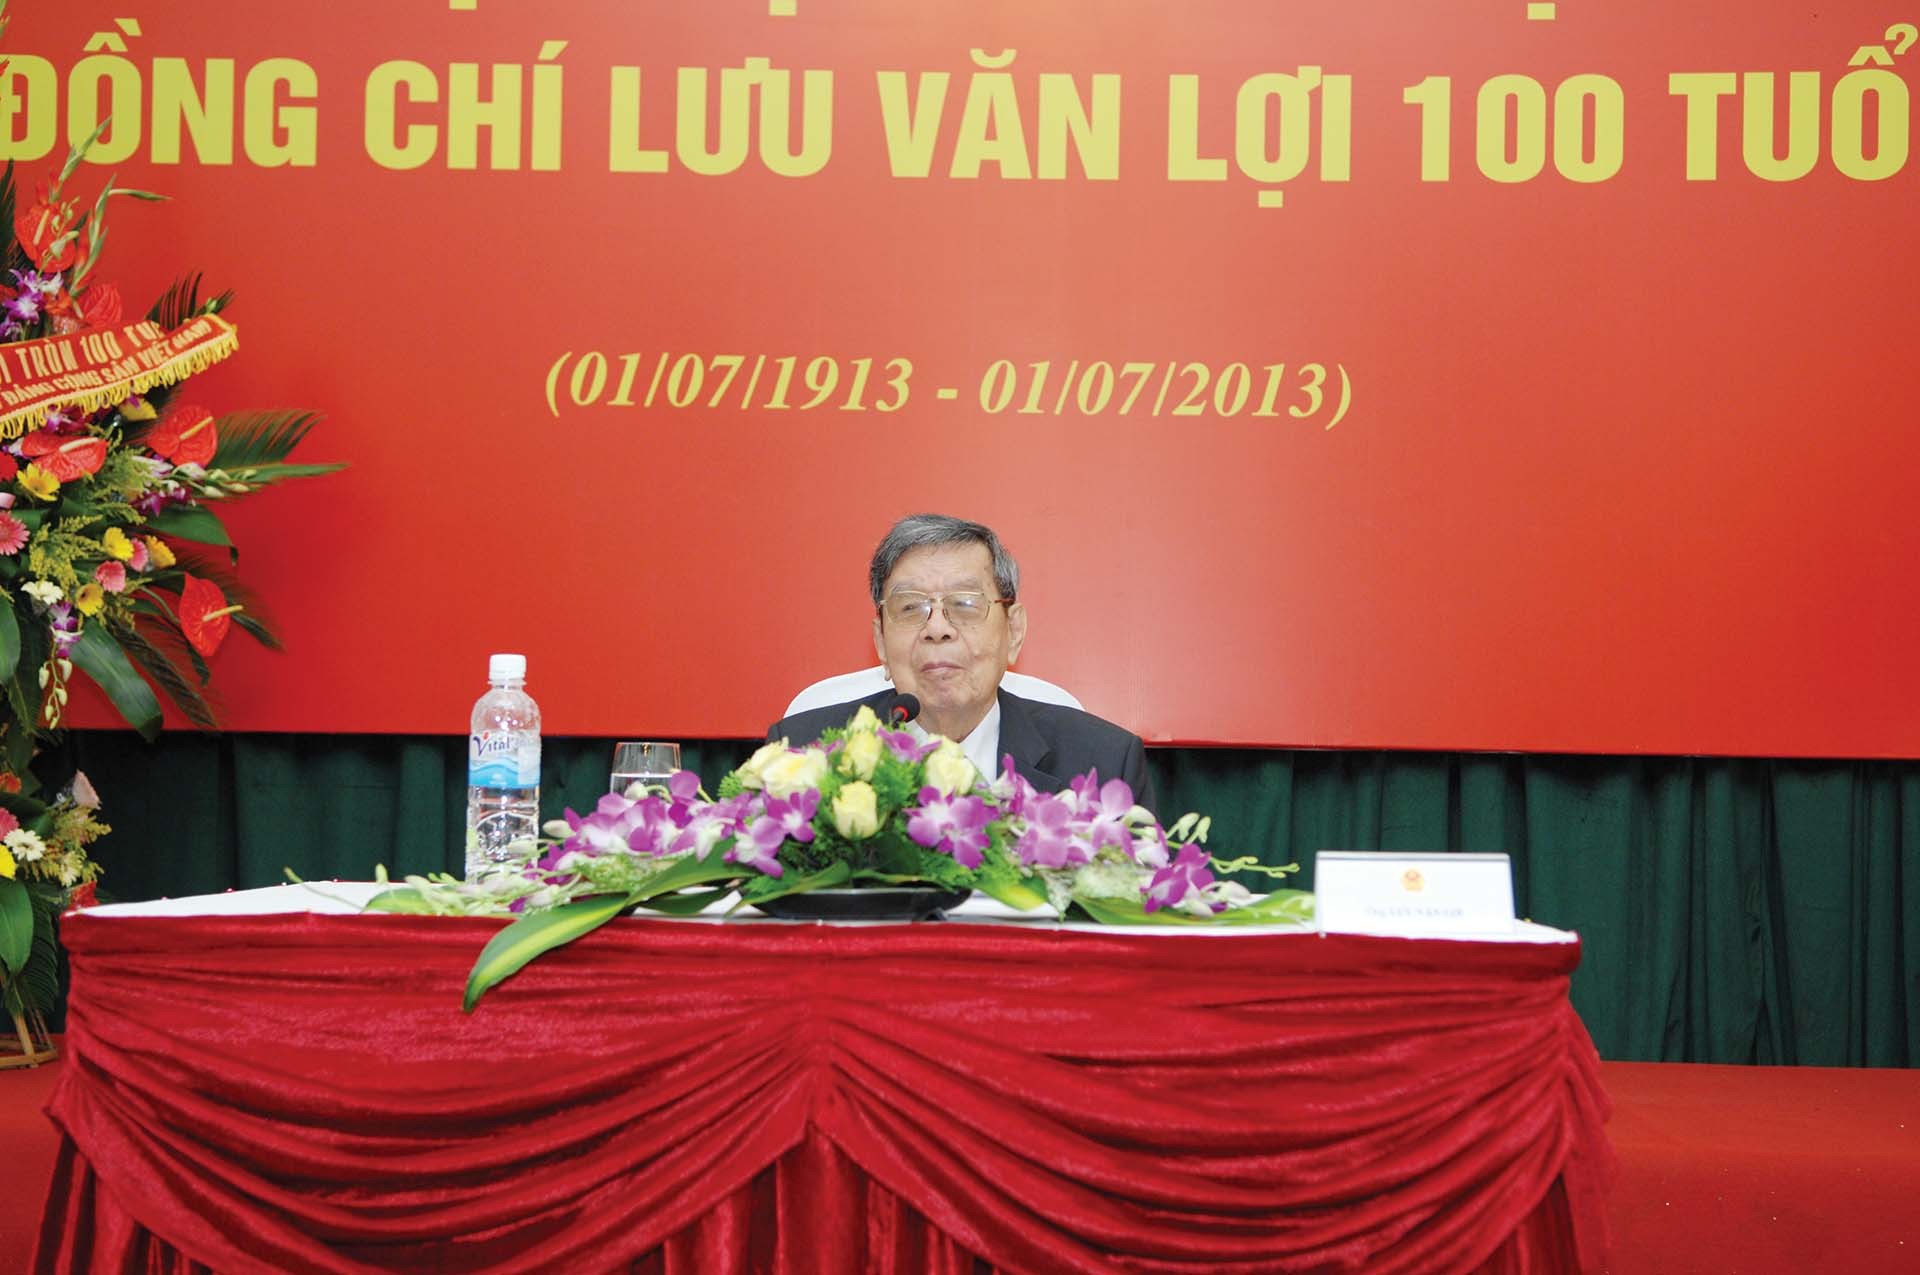 Ông Lưu Văn Lợi trong lễ mừng thọ 100 tuổi năm 2013.